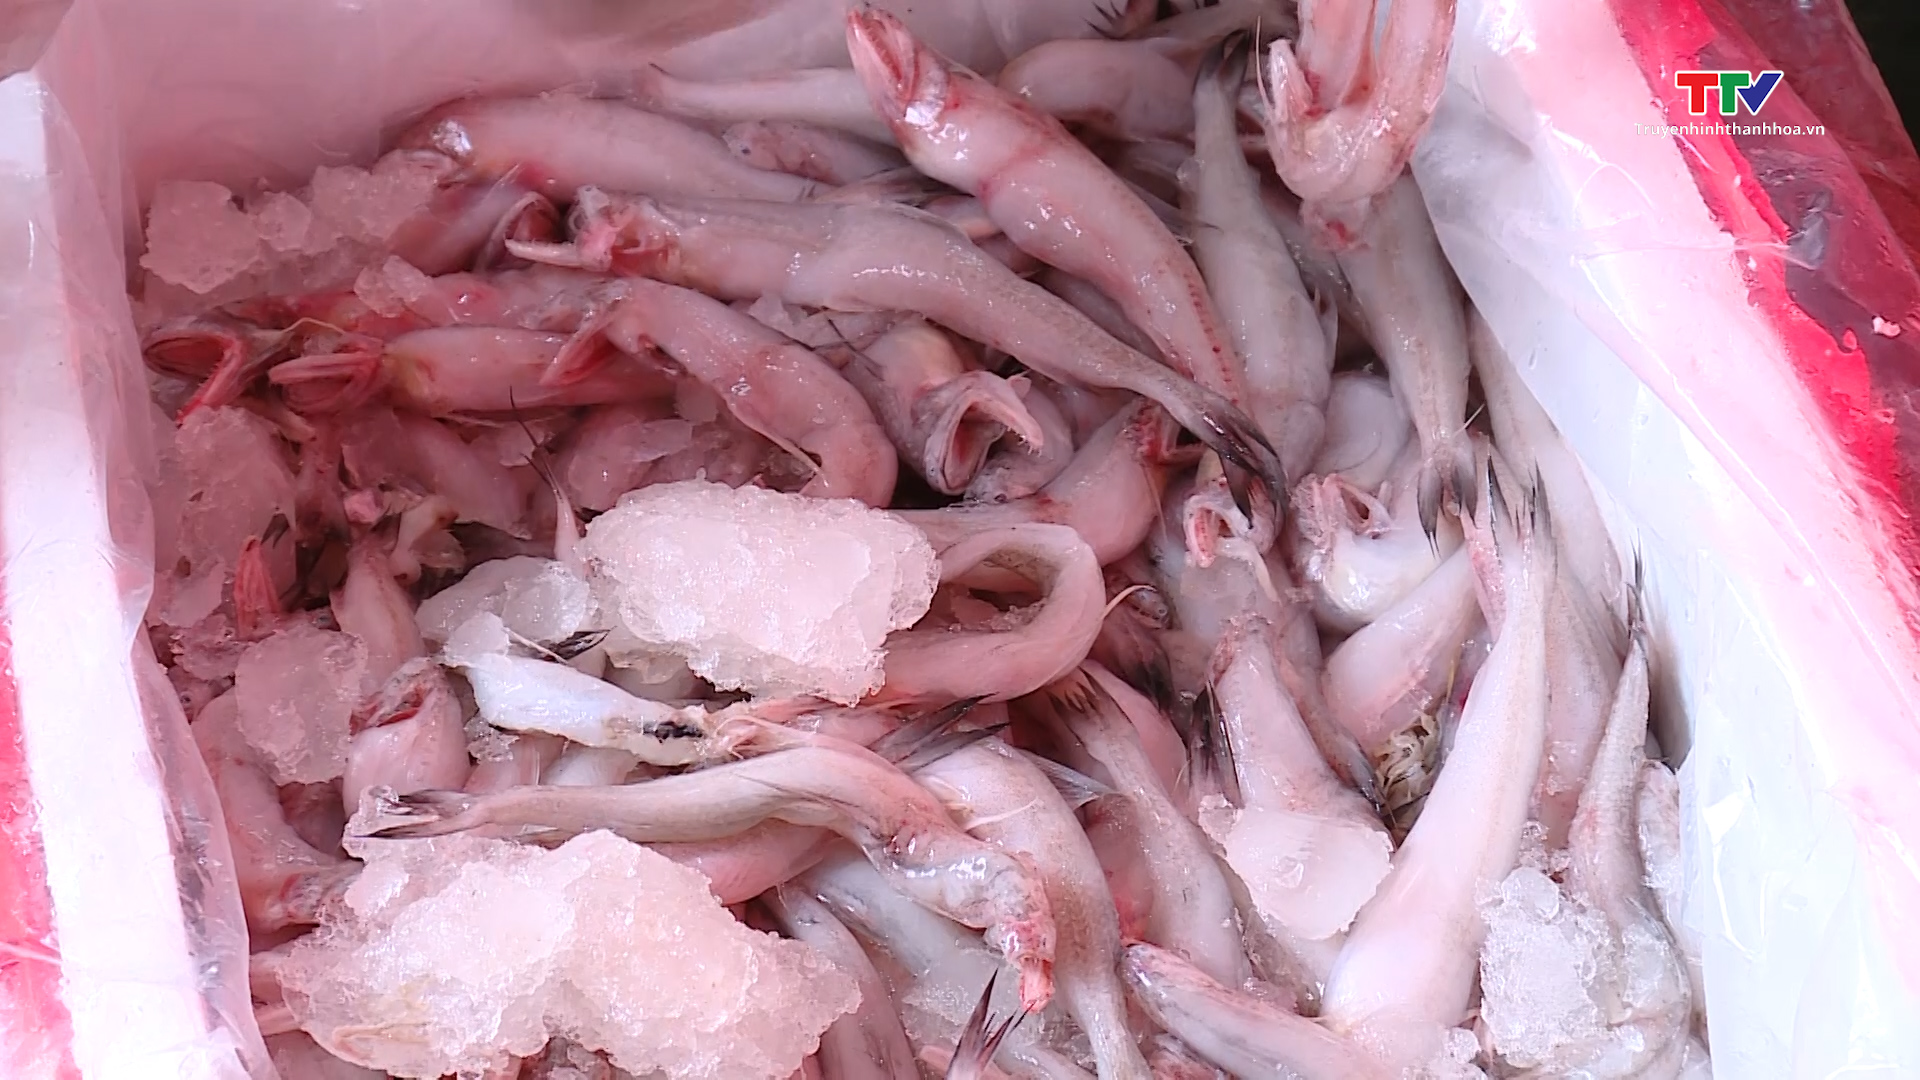 Bắt giữ 4.500 kg cá khoai không rõ nguồn gốc xuất xứ - Ảnh 2.